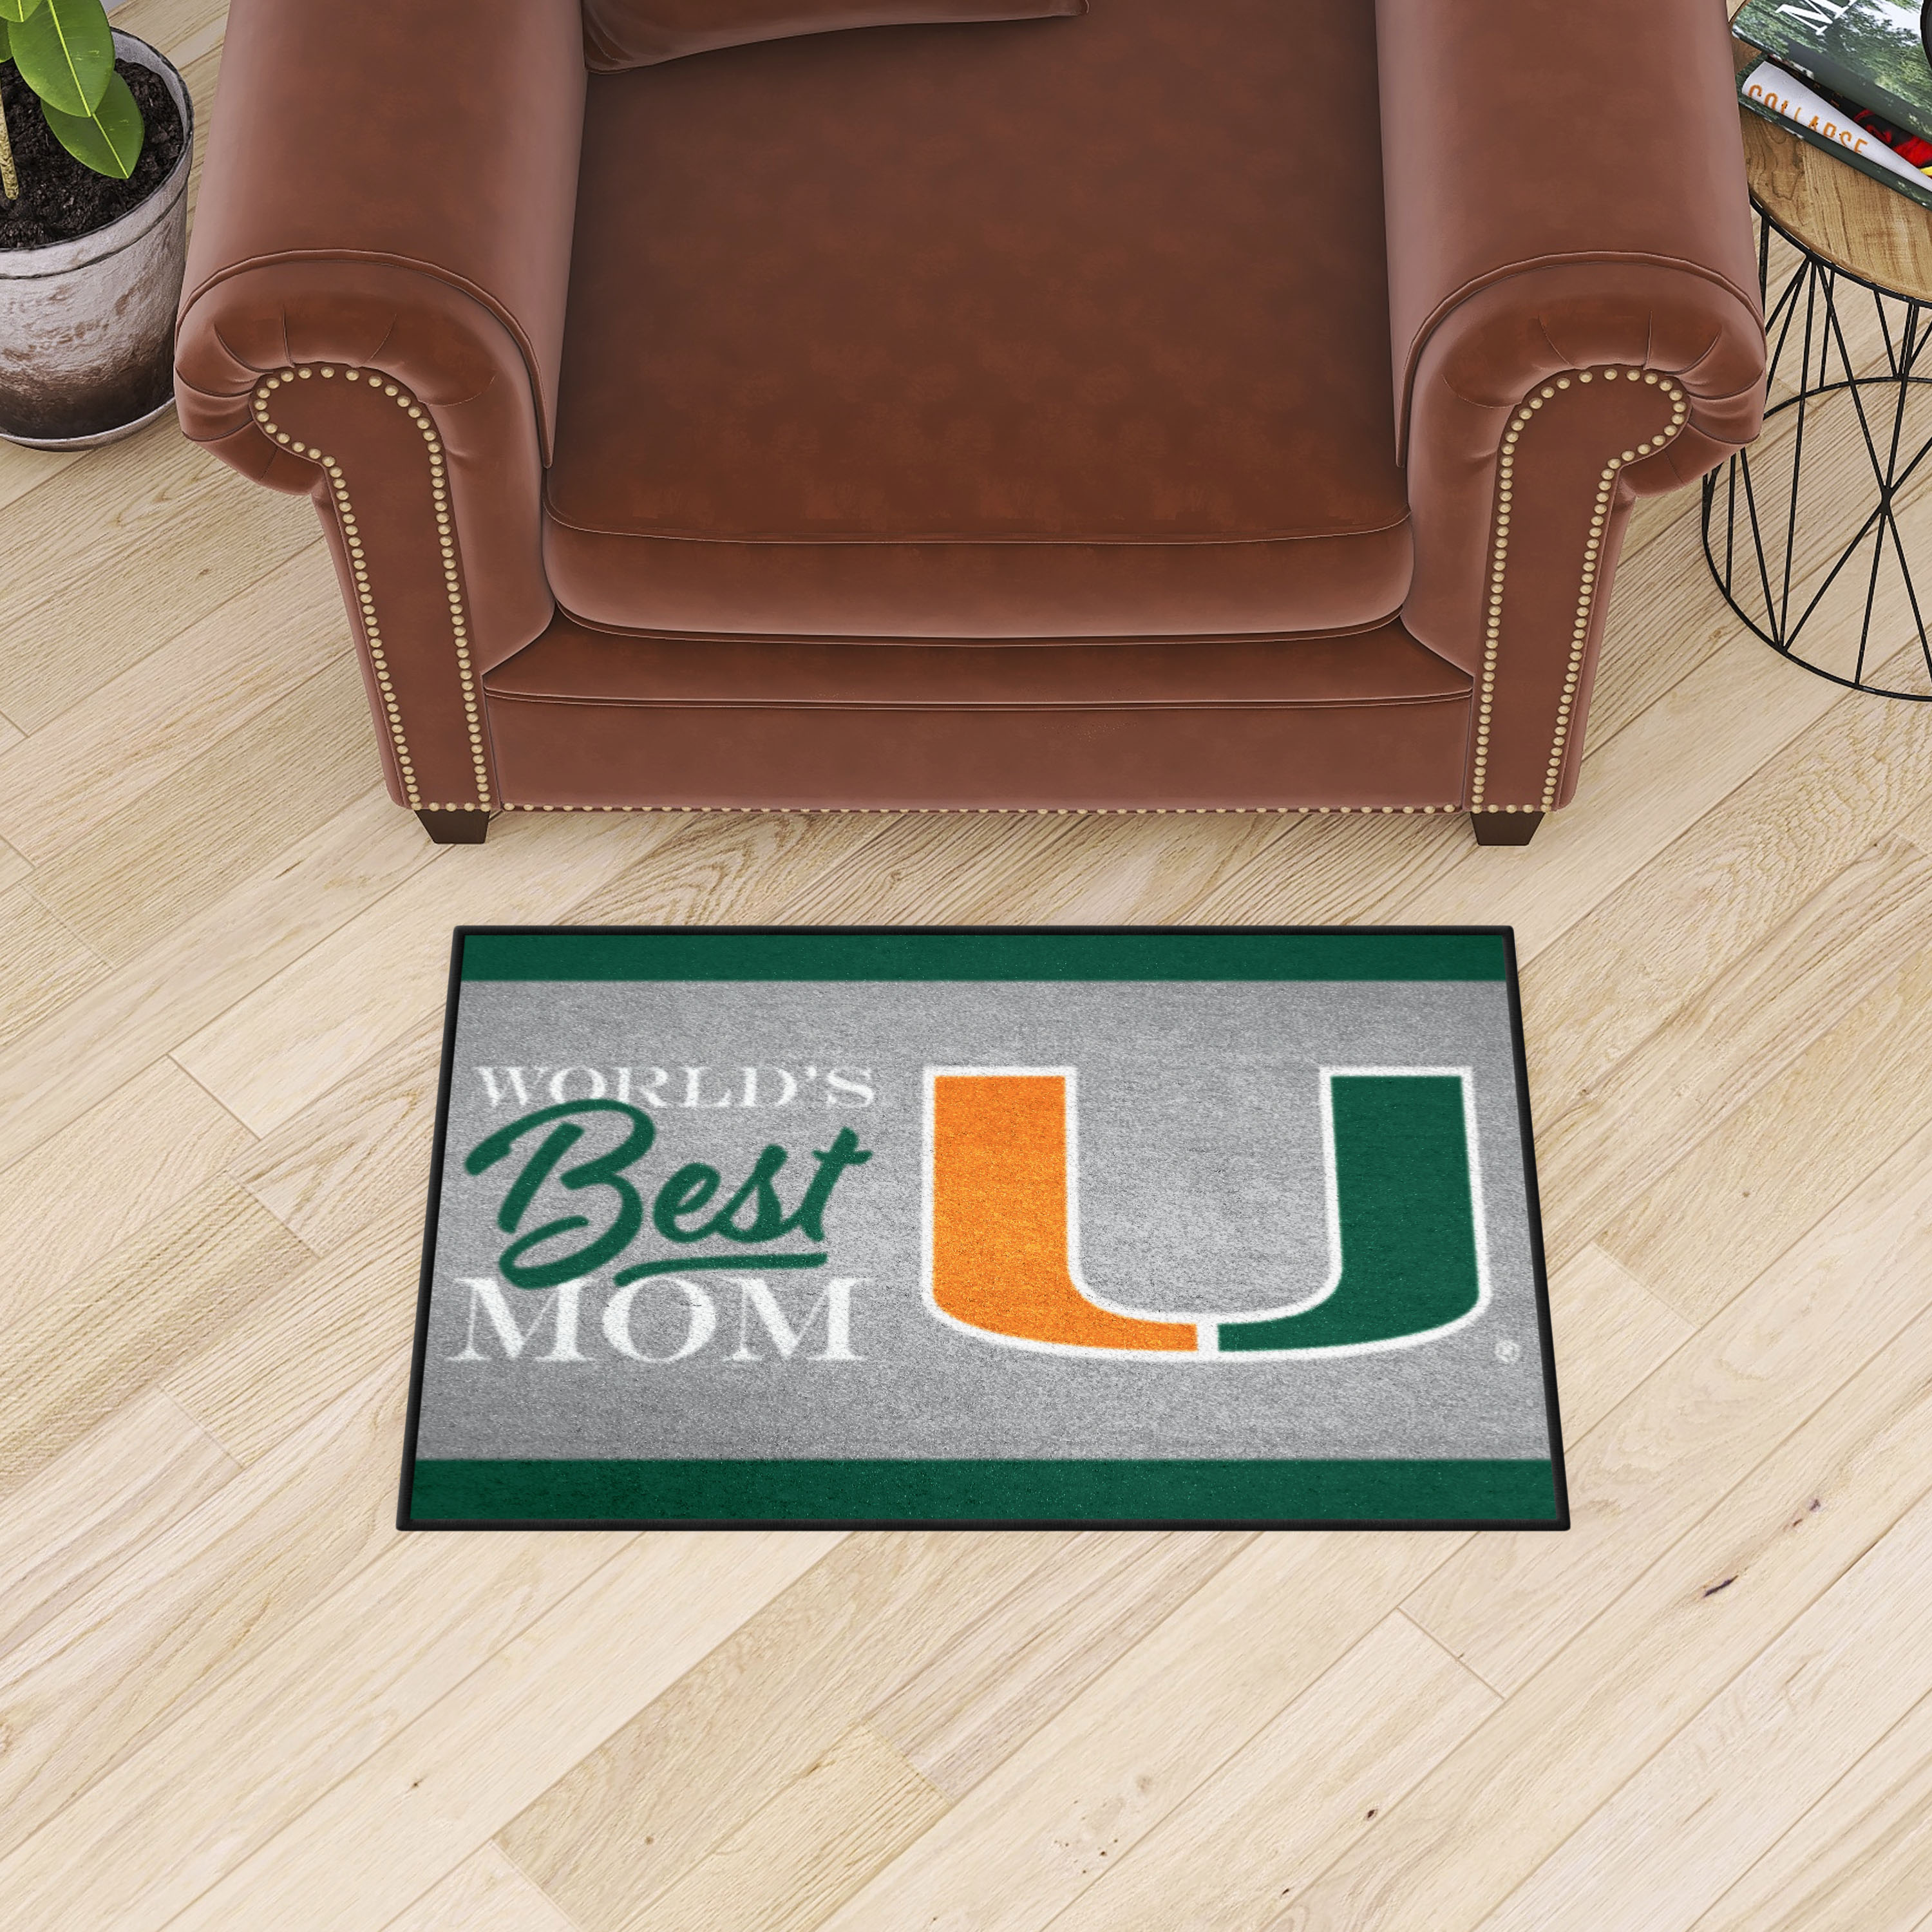 Miami Hurricanes World's Best Mom Starter Doormat - 19 x 30